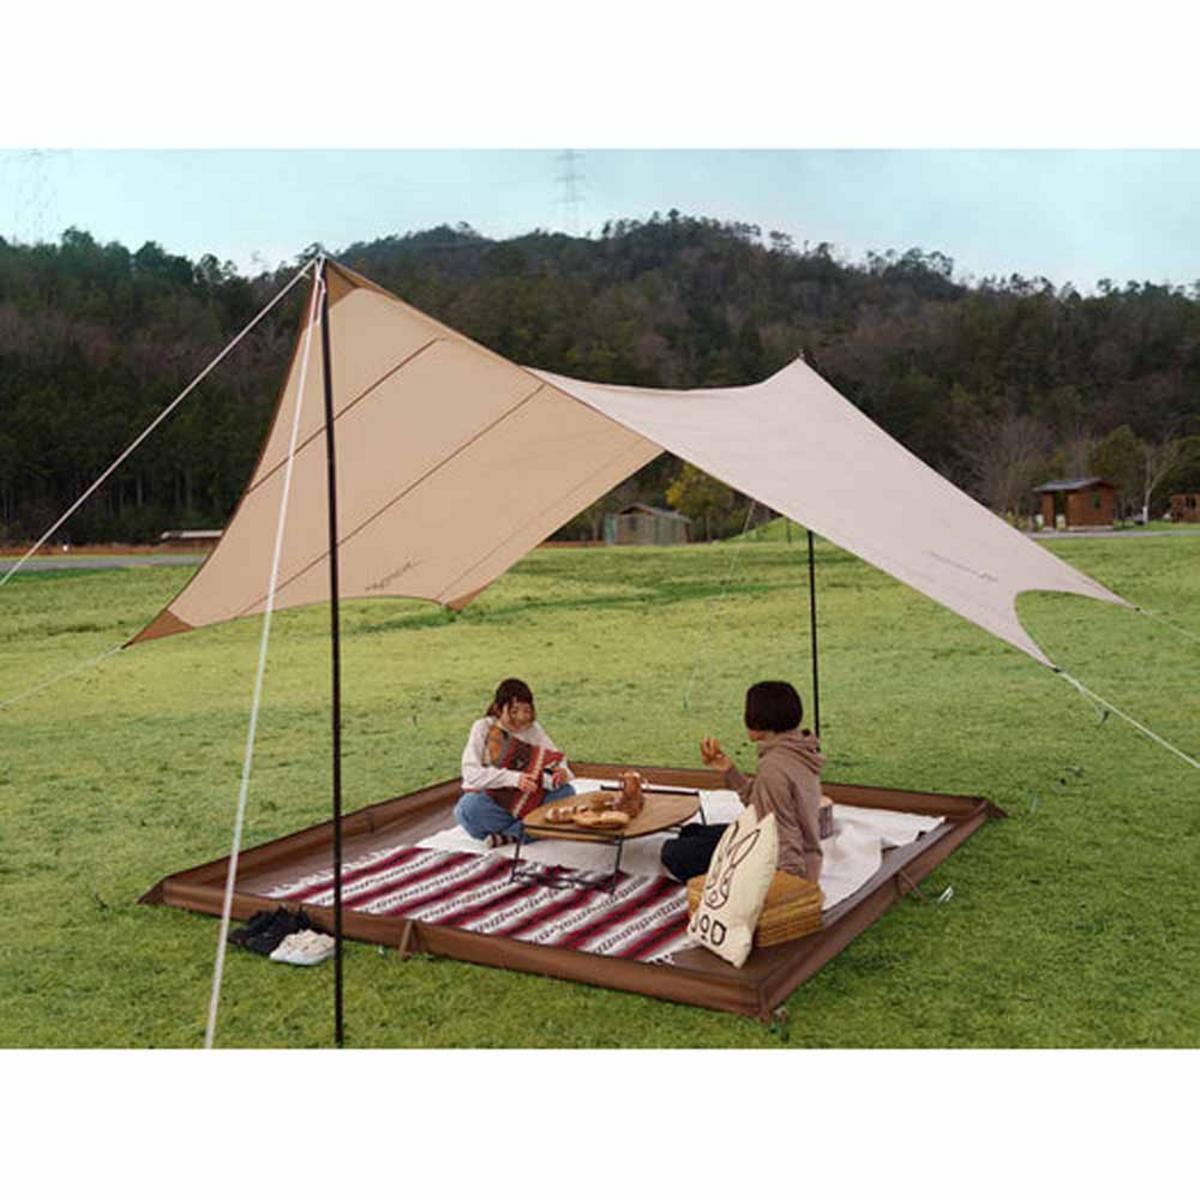 DOD Outdoors Kama Zashiki Removable Tent Floor - Small/Brown